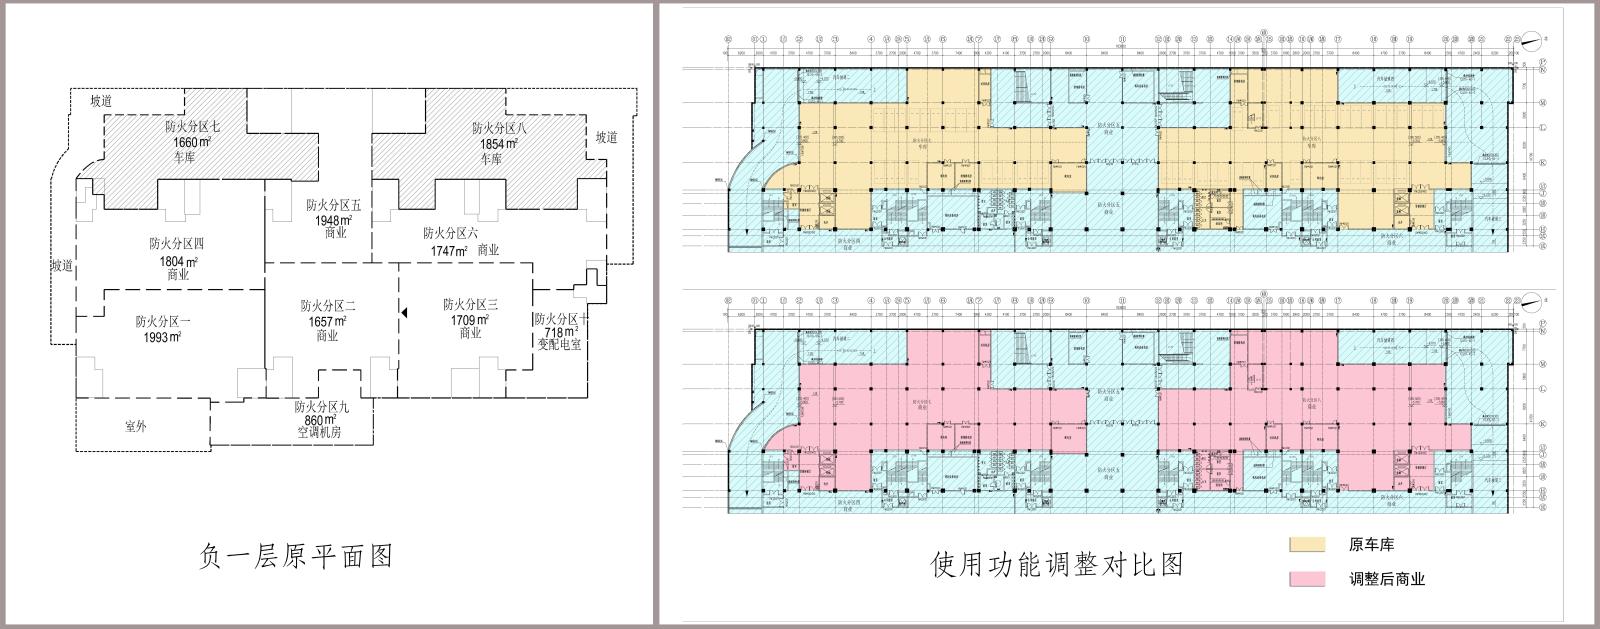 和润·佳汇广场负一层局部建筑功能调整.jpg